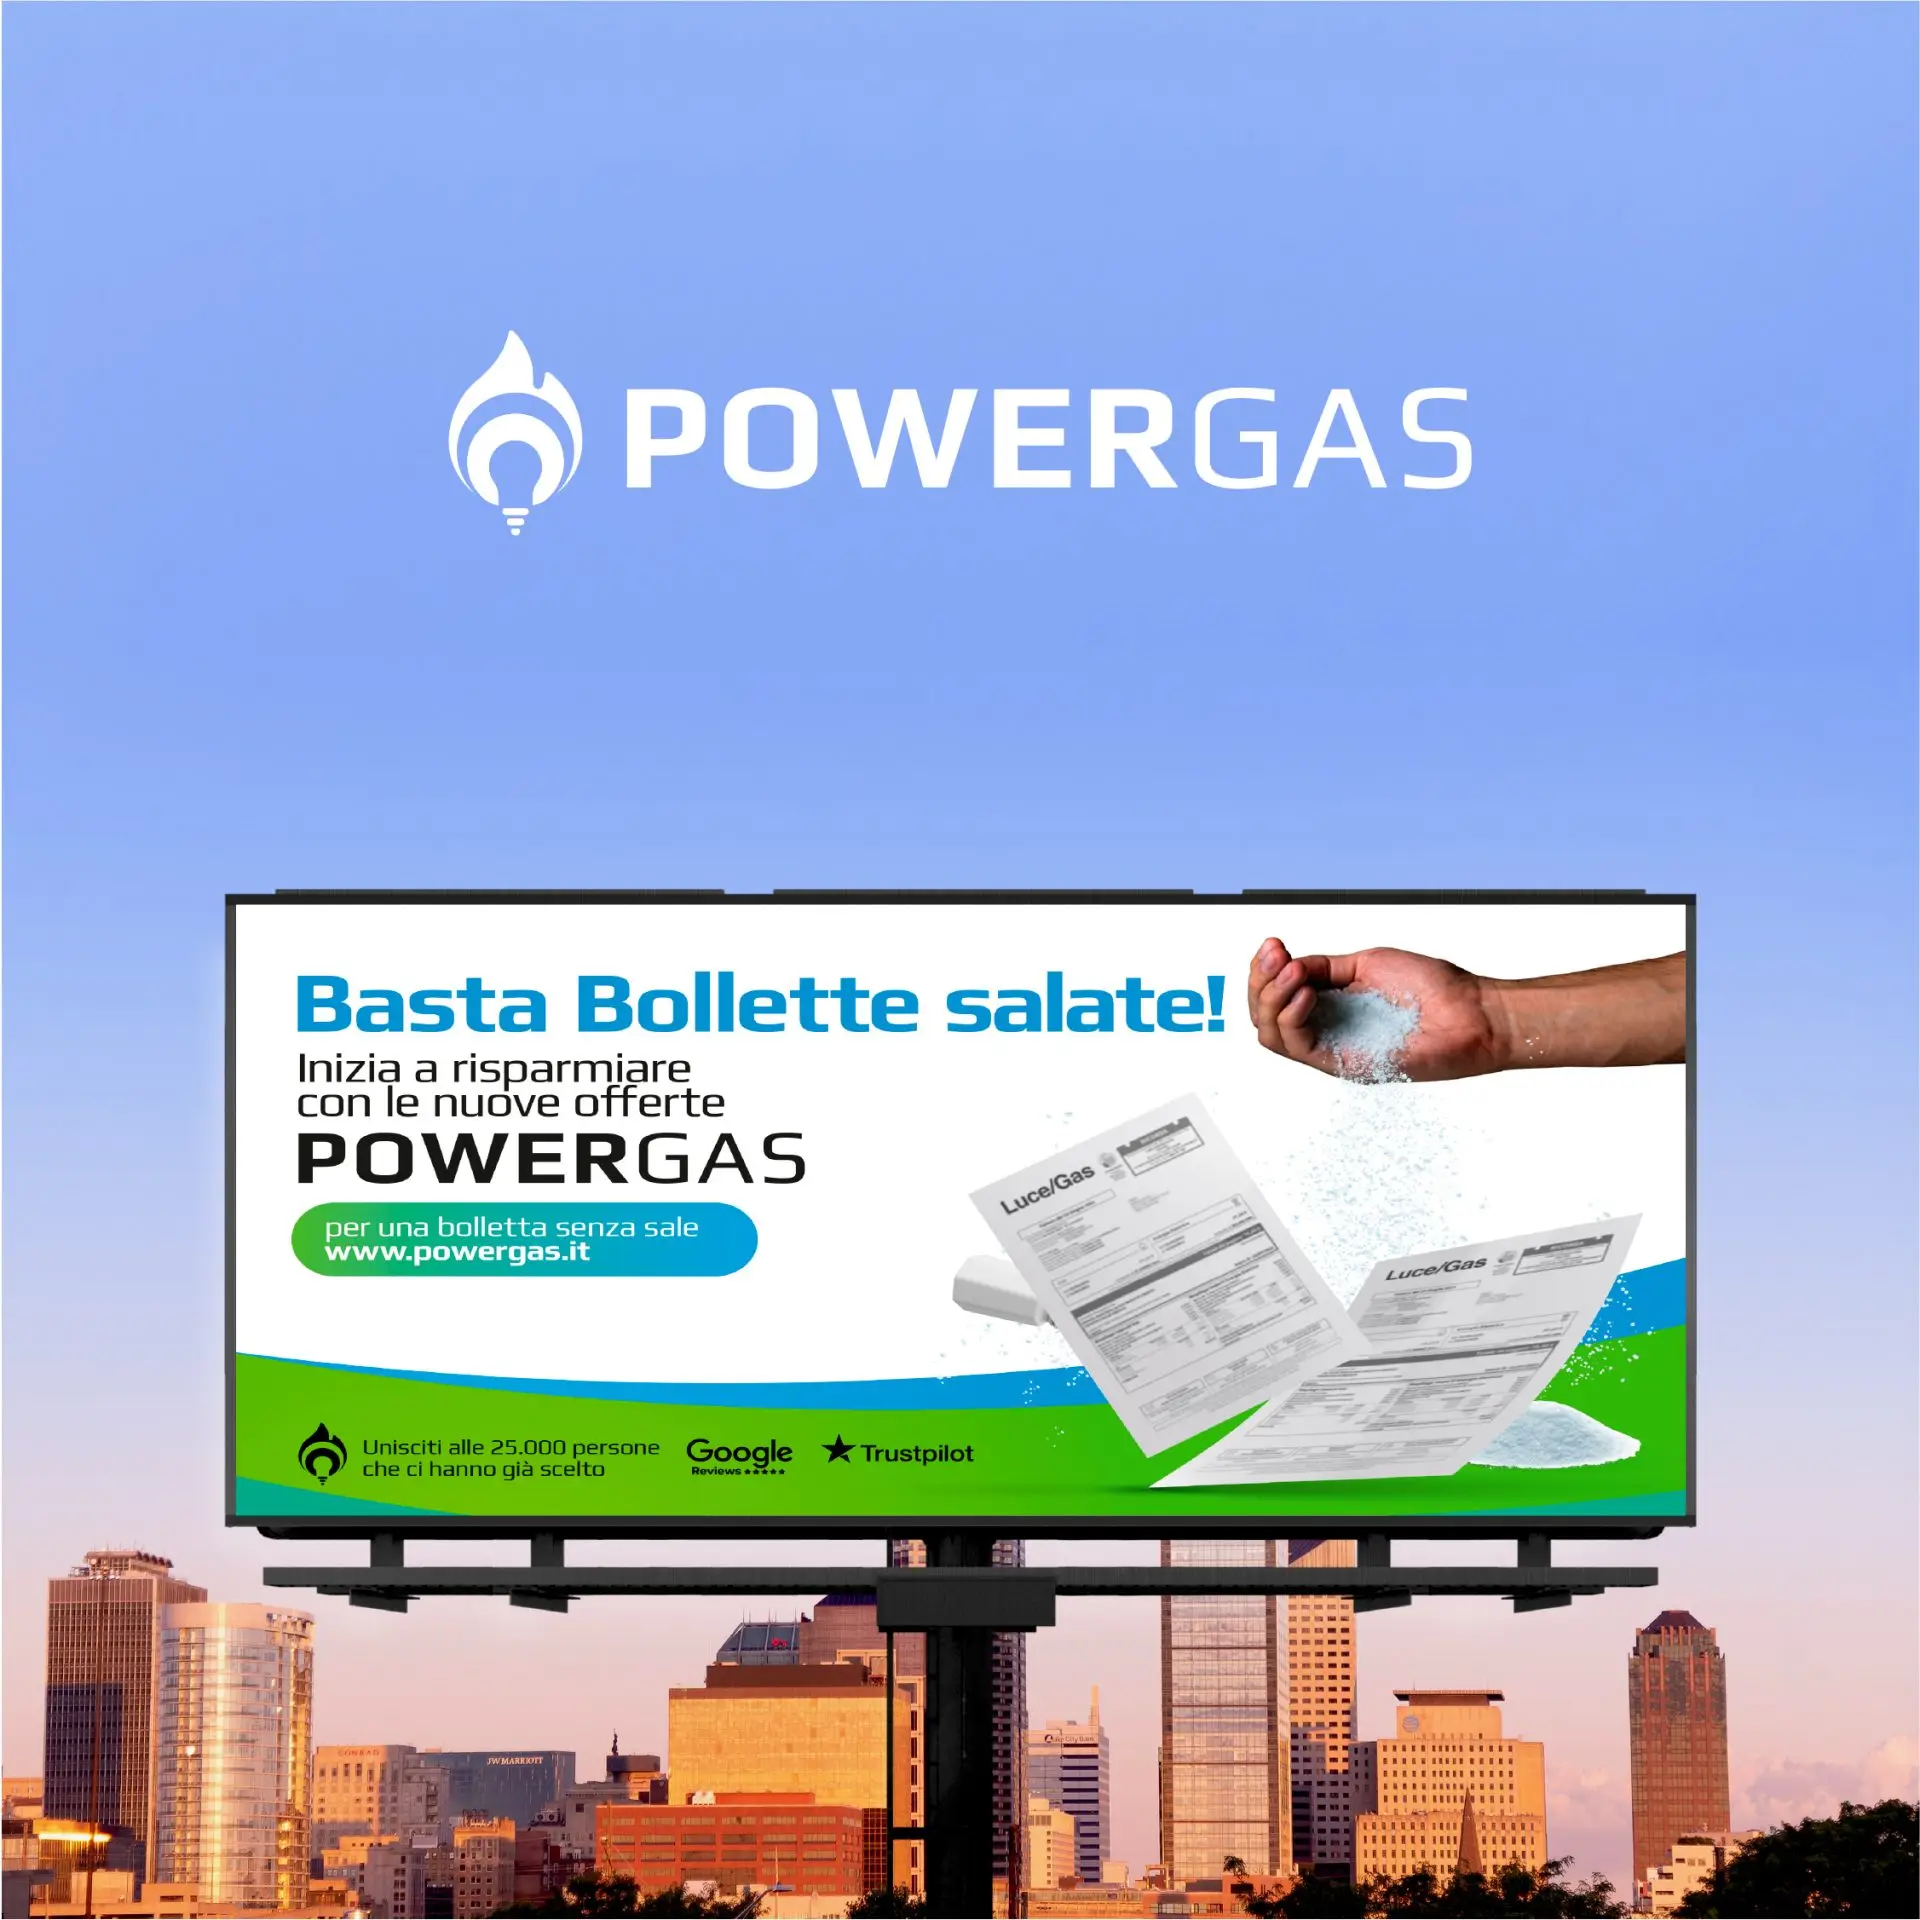 Campagna comunicativa online e offline - Powergas: tono distintivo e divertente per differenziarsi nel settore delle utility gas e luce